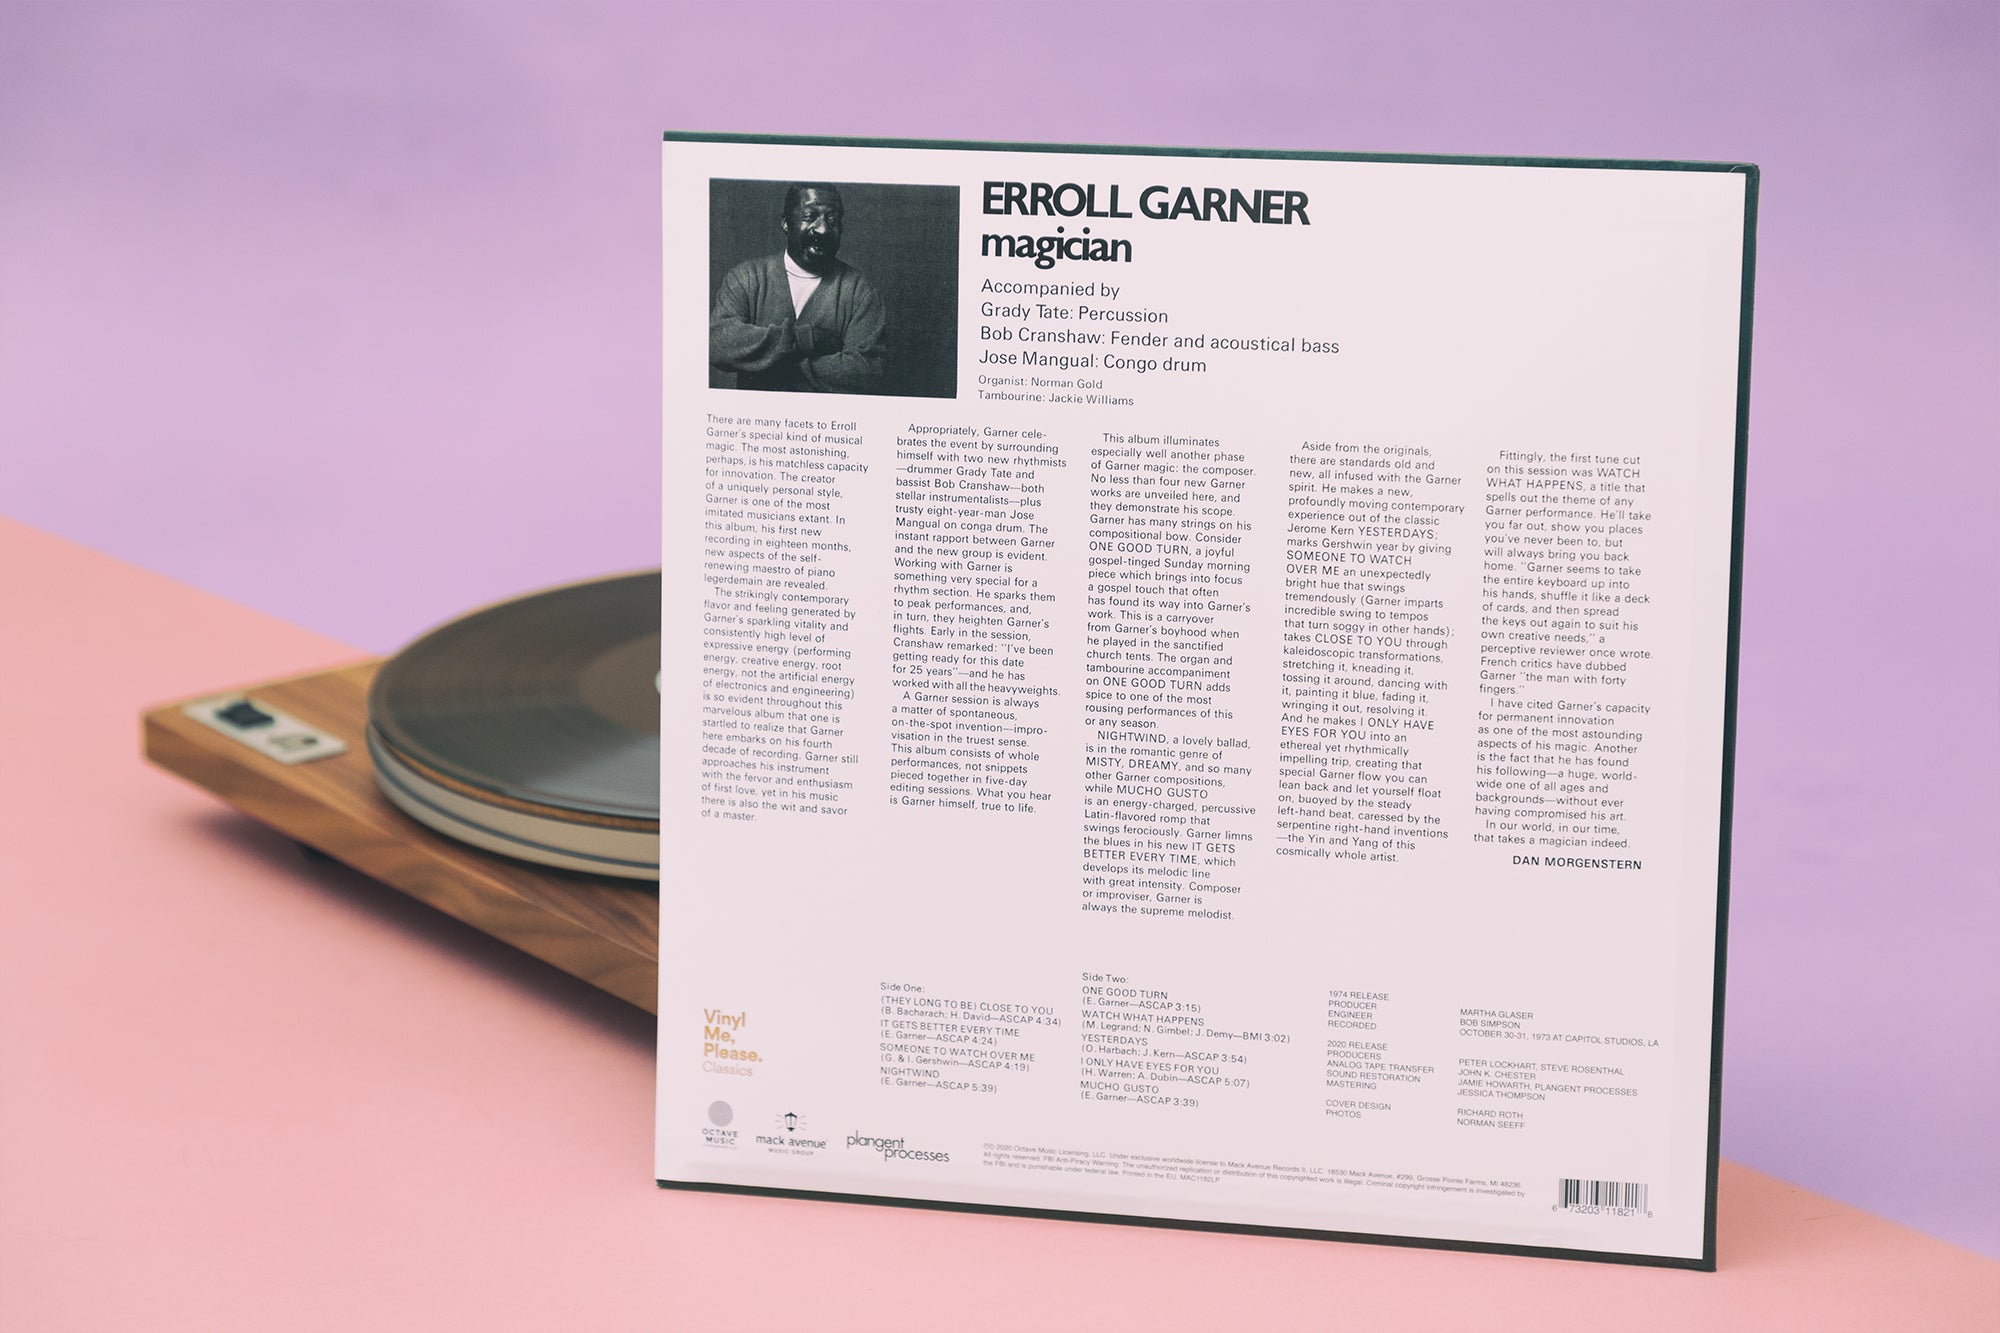 ERROL GARNER PLAYS - RECORD ALBUM LP 33 RPM - RONDOLETTE RECORDS